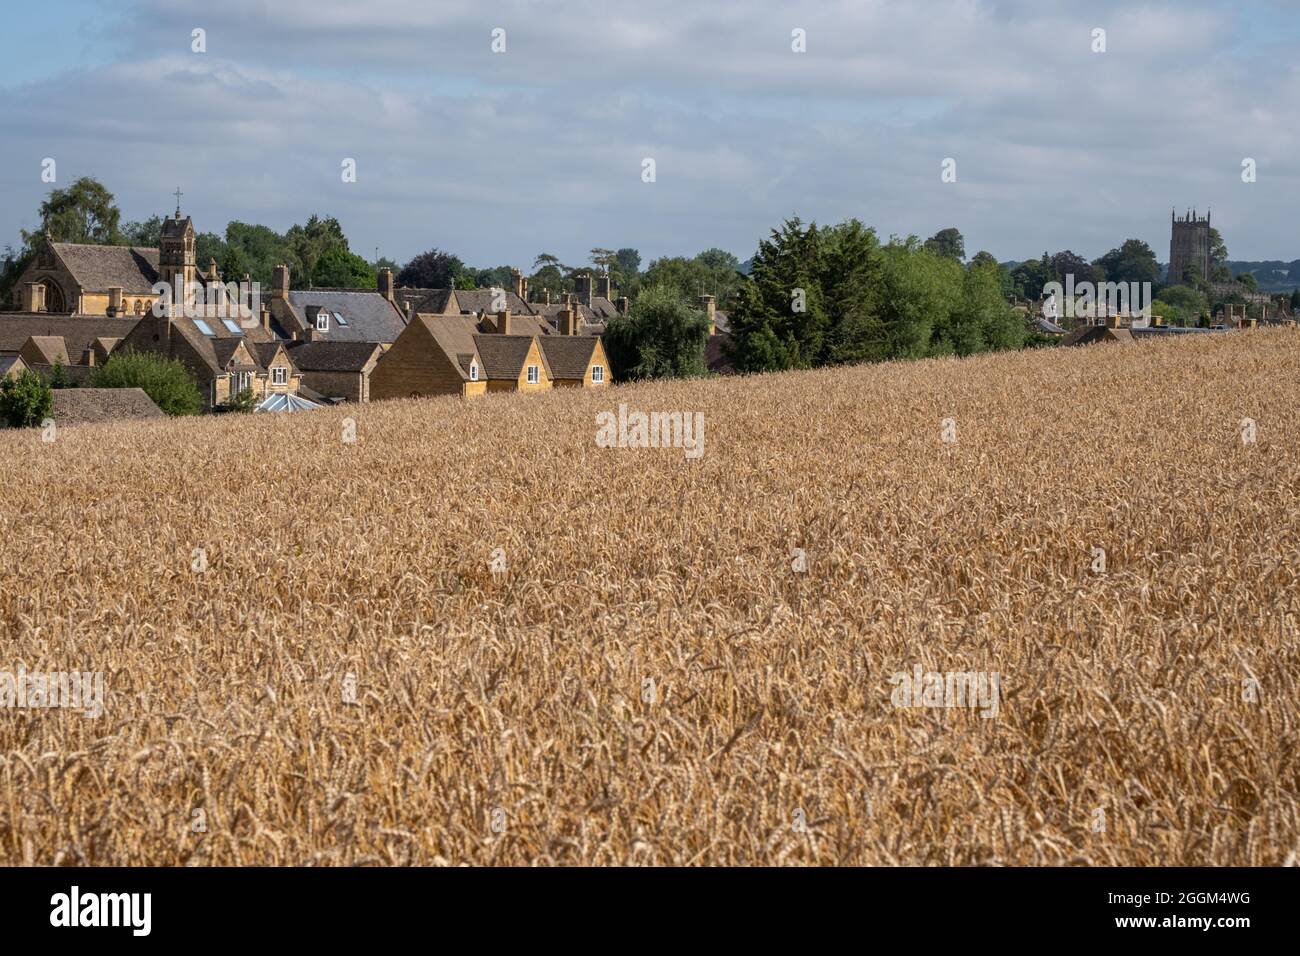 Die Cotswold-Stadt Chipping Campden, Gloucestershire, Großbritannien am Horizont. Fotografiert im Spätsommer mit einem Weizenfeld im Vordergrund. Stockfoto